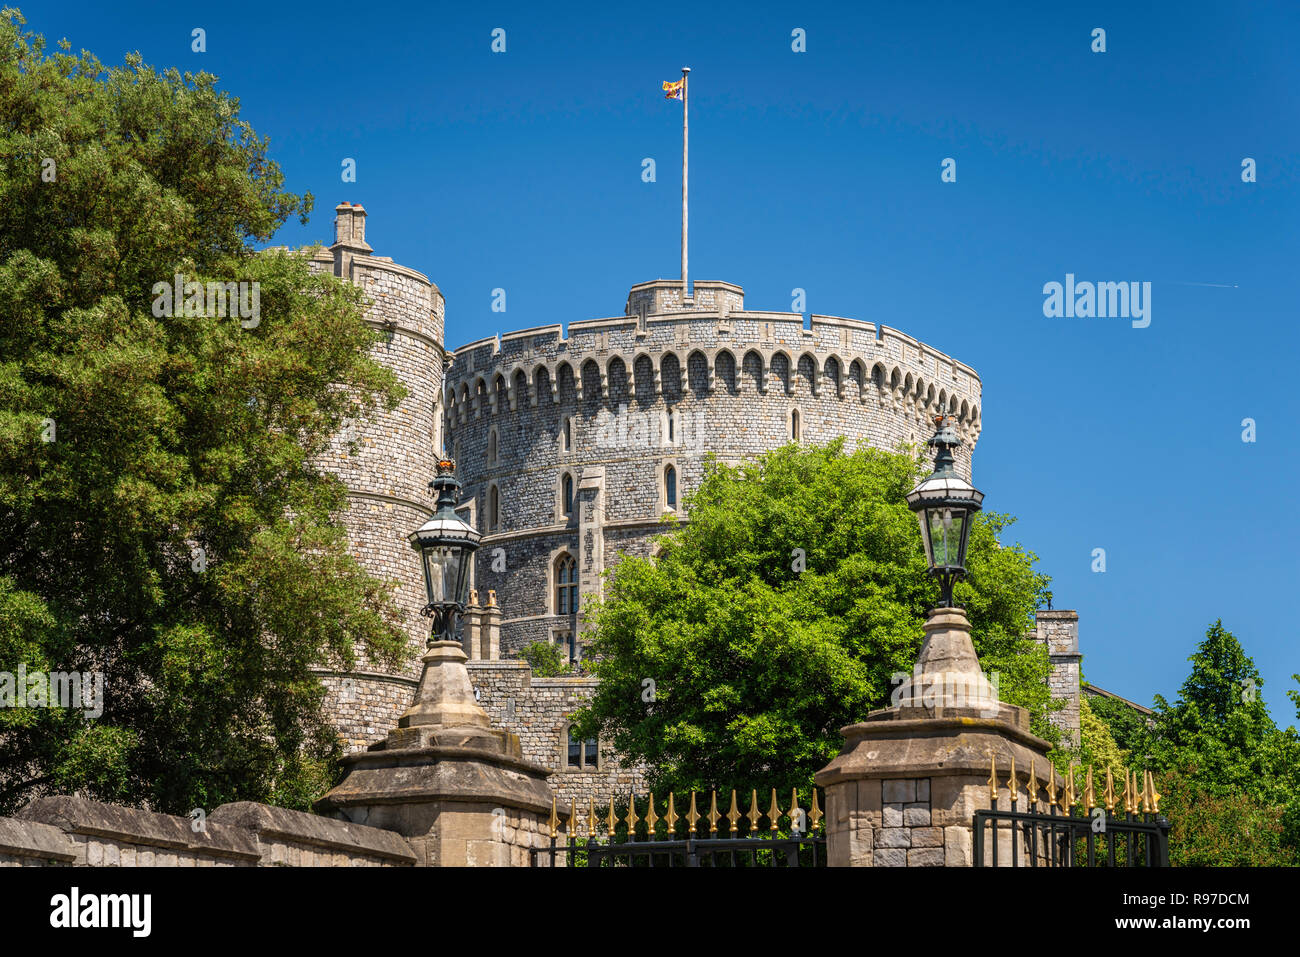 Vista exterior del castillo de Windsor en Windsor, Berkshire, Gran Bretaña, Reino Unido, Europa. Foto de stock